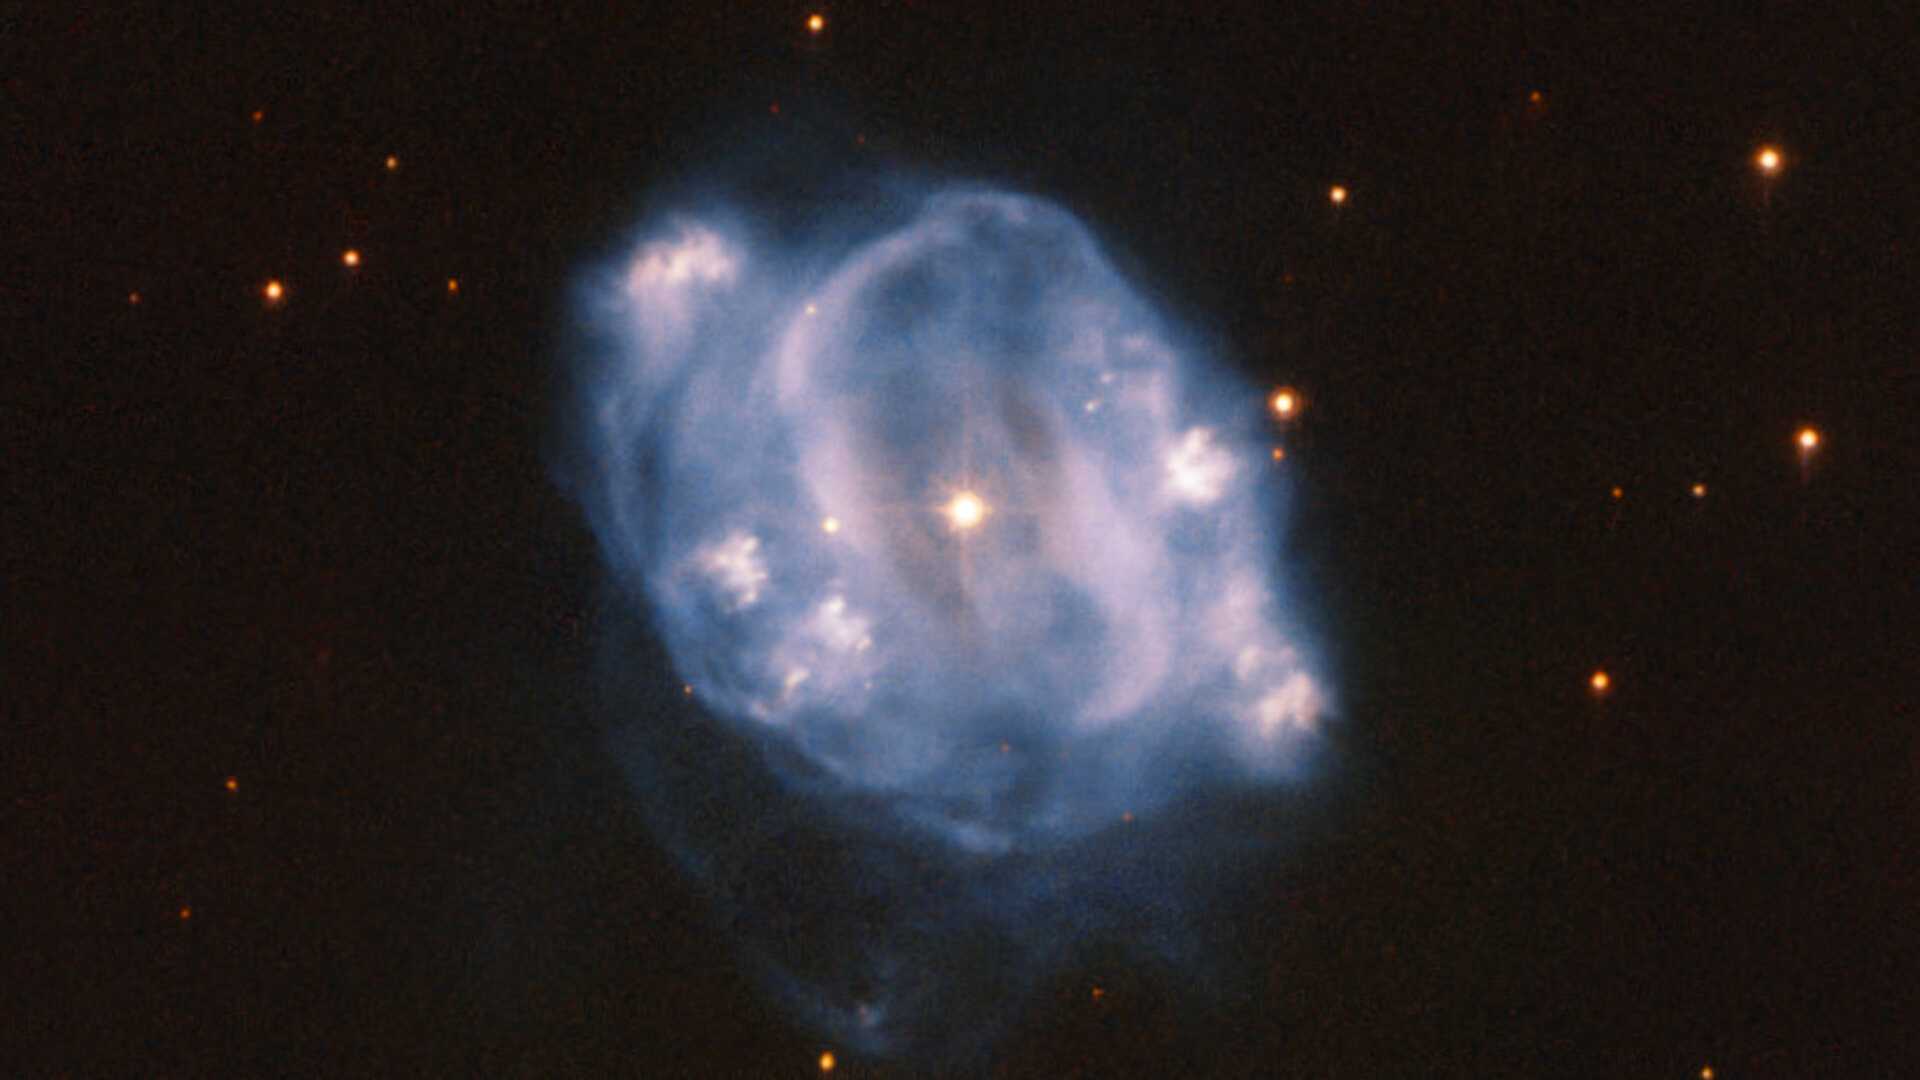 Esta Imagem feita pelo Hubble mostra NGC 5307, uma nebulosa planetária que fica a cerca de 10 mil anos-luz da Terra. Pode ser vista na Constelação do Centauro, principalmente no hemisfério sul. Uma nebulosa planetária é o estágio final de uma estrela parecida com o Sol. Ela nos permite um vislumbre do futuro do Sistema Solar. Uma estrela como o nosso Sol irá, no final da sua vida, transformar-se numa gigante vermelha. As estrelas são sustentadas pela fusão nuclear que ocorre em seu núcleo, que gera energia. Os processos de fusão nuclear tentam constantemente destruir a estrela. Apenas a gravidade da estrela impede que isso aconteça